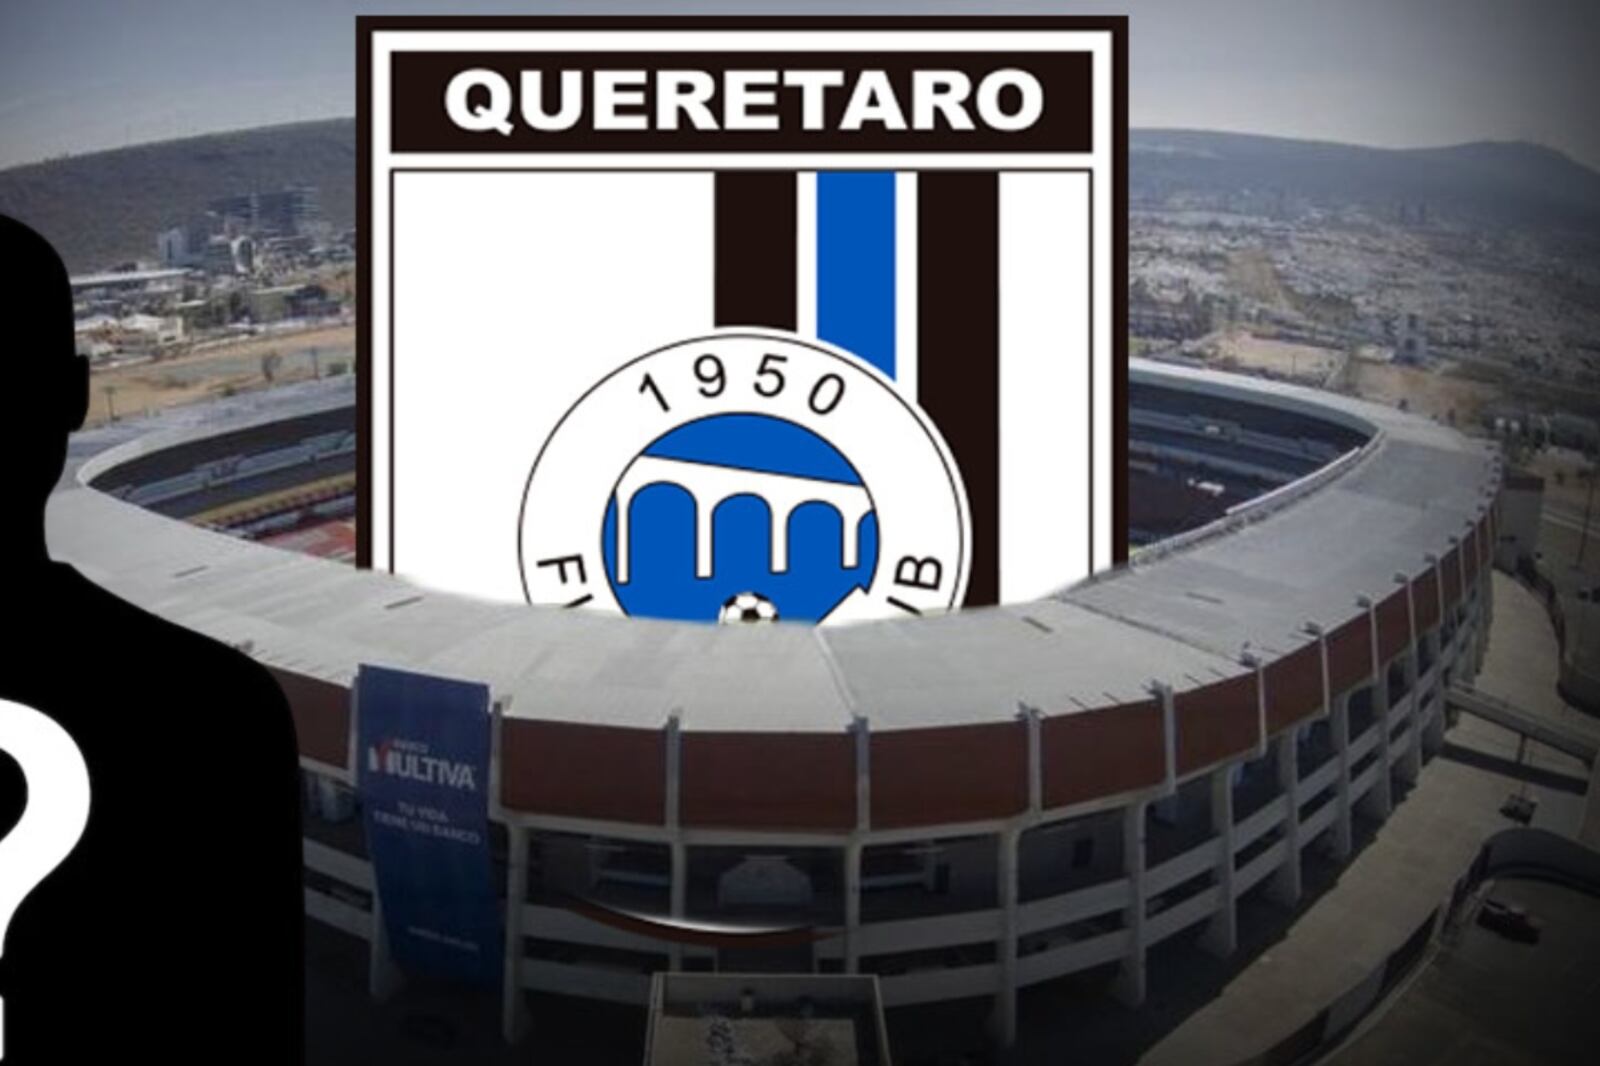 El club que regresaría a 1era, su estadio tiene más aforo que el de Querétaro